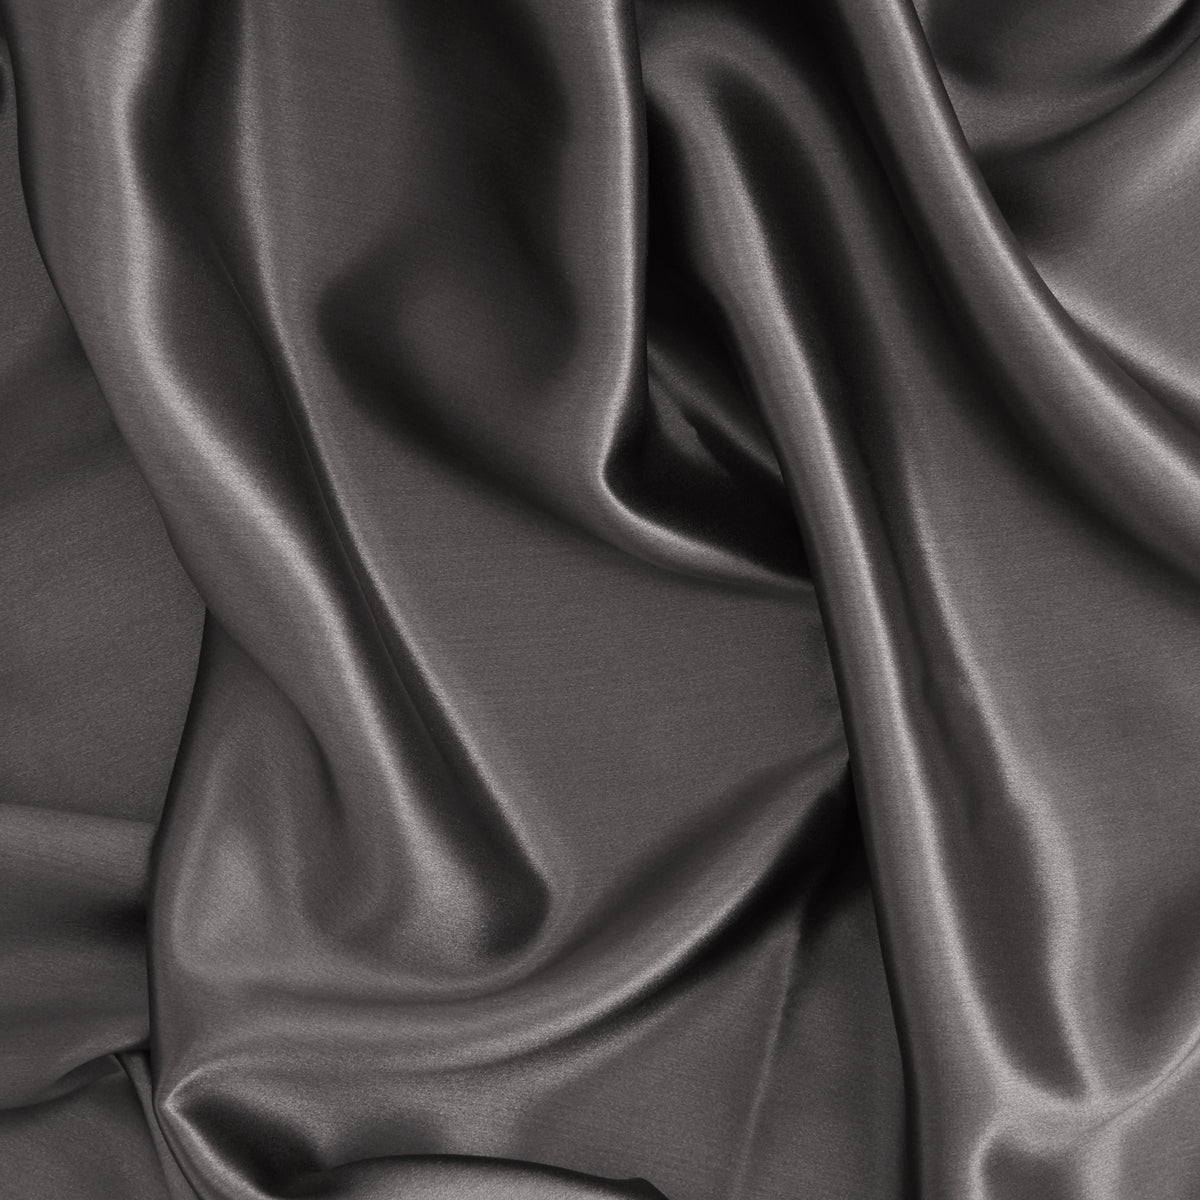 Tempest Grey Silk Pillowcase